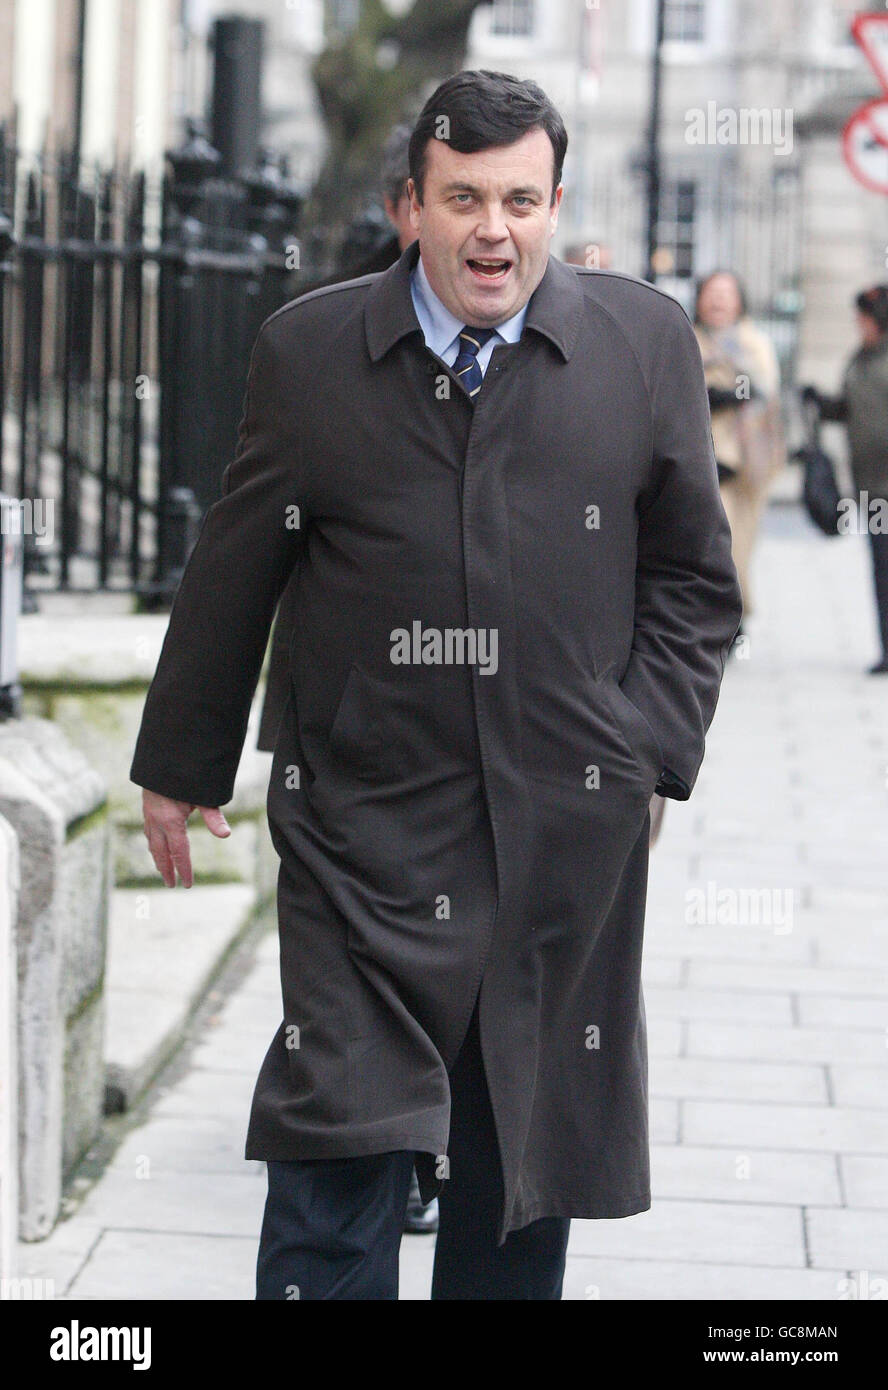 Il Ministro delle Finanze Brian Lenihan cammina lungo Molesworth Street a Dublino dopo aver informato i media sulla sua condizione medica. Lenihan ha confermato che sarebbe stato sottoposto a trattamento per rimuovere il tessuto canceroso nel suo pancreas. Foto Stock